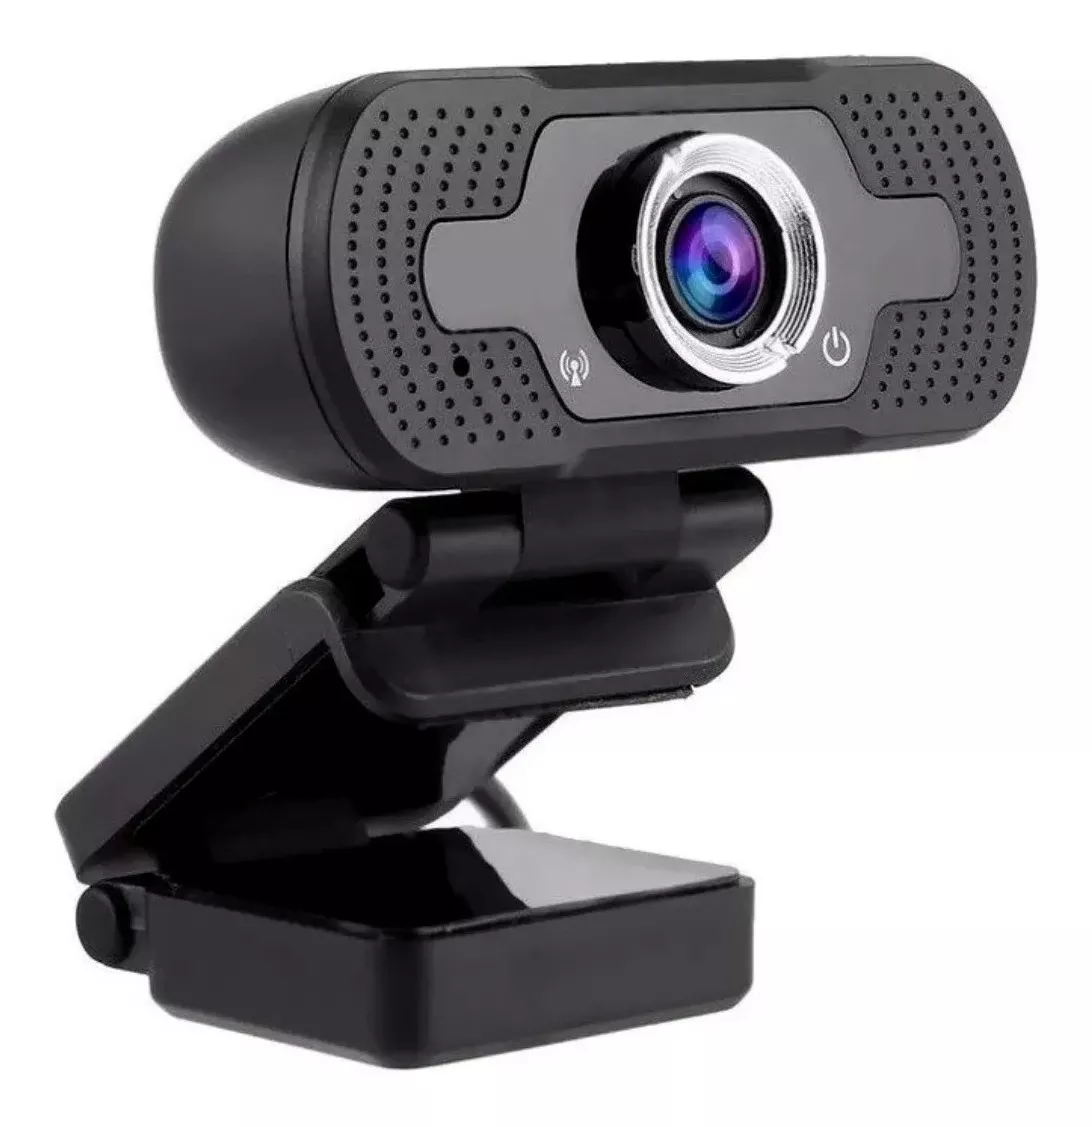 Kit 20 Webcam Full Hd 1080p Usb Câmera Stream Resolução W18